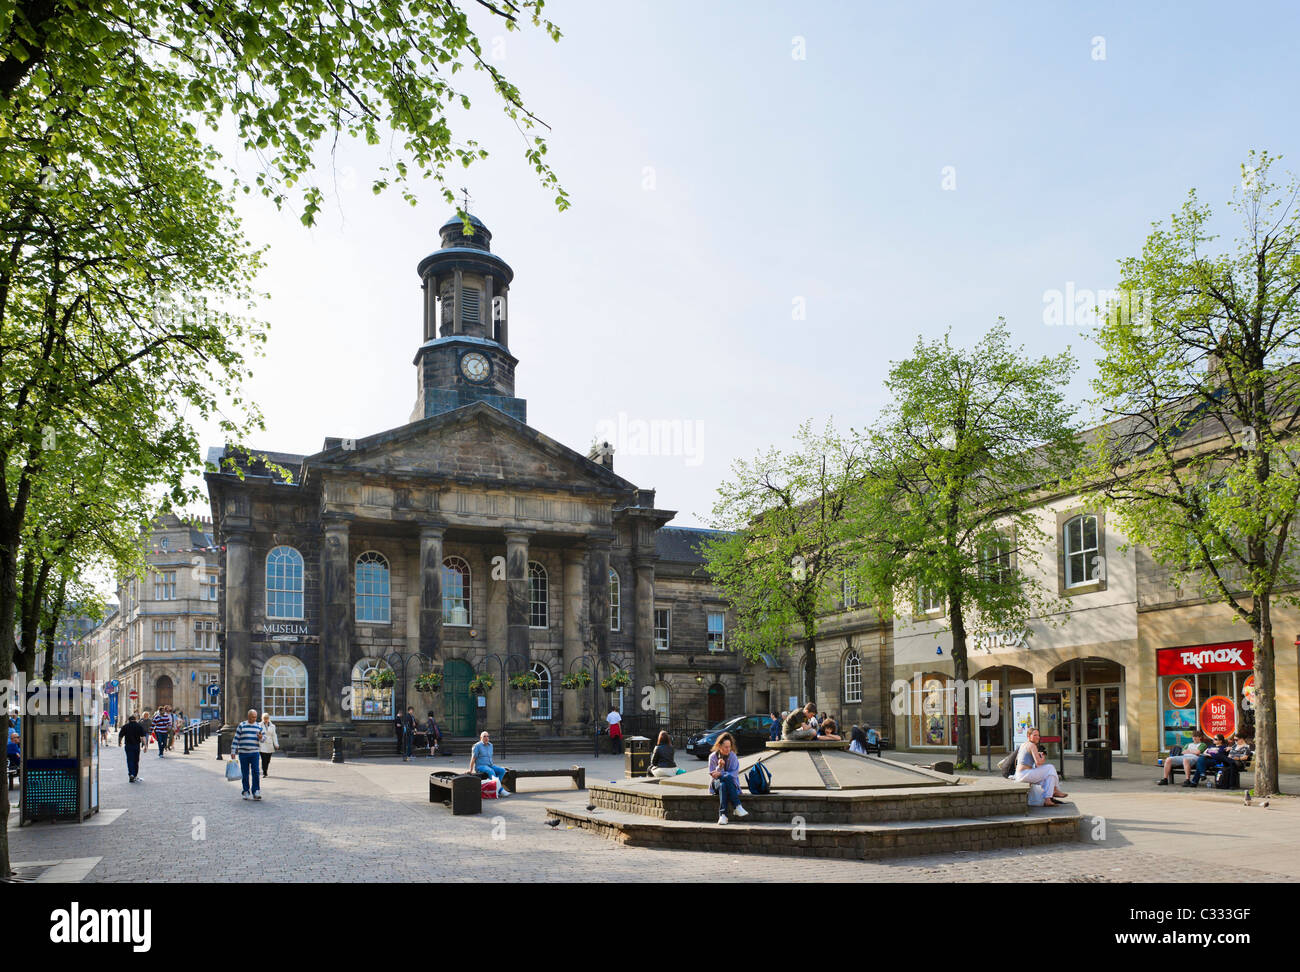 Place du marché et musée dans le centre-ville historique, Lancaster, Lancashire, UK Banque D'Images